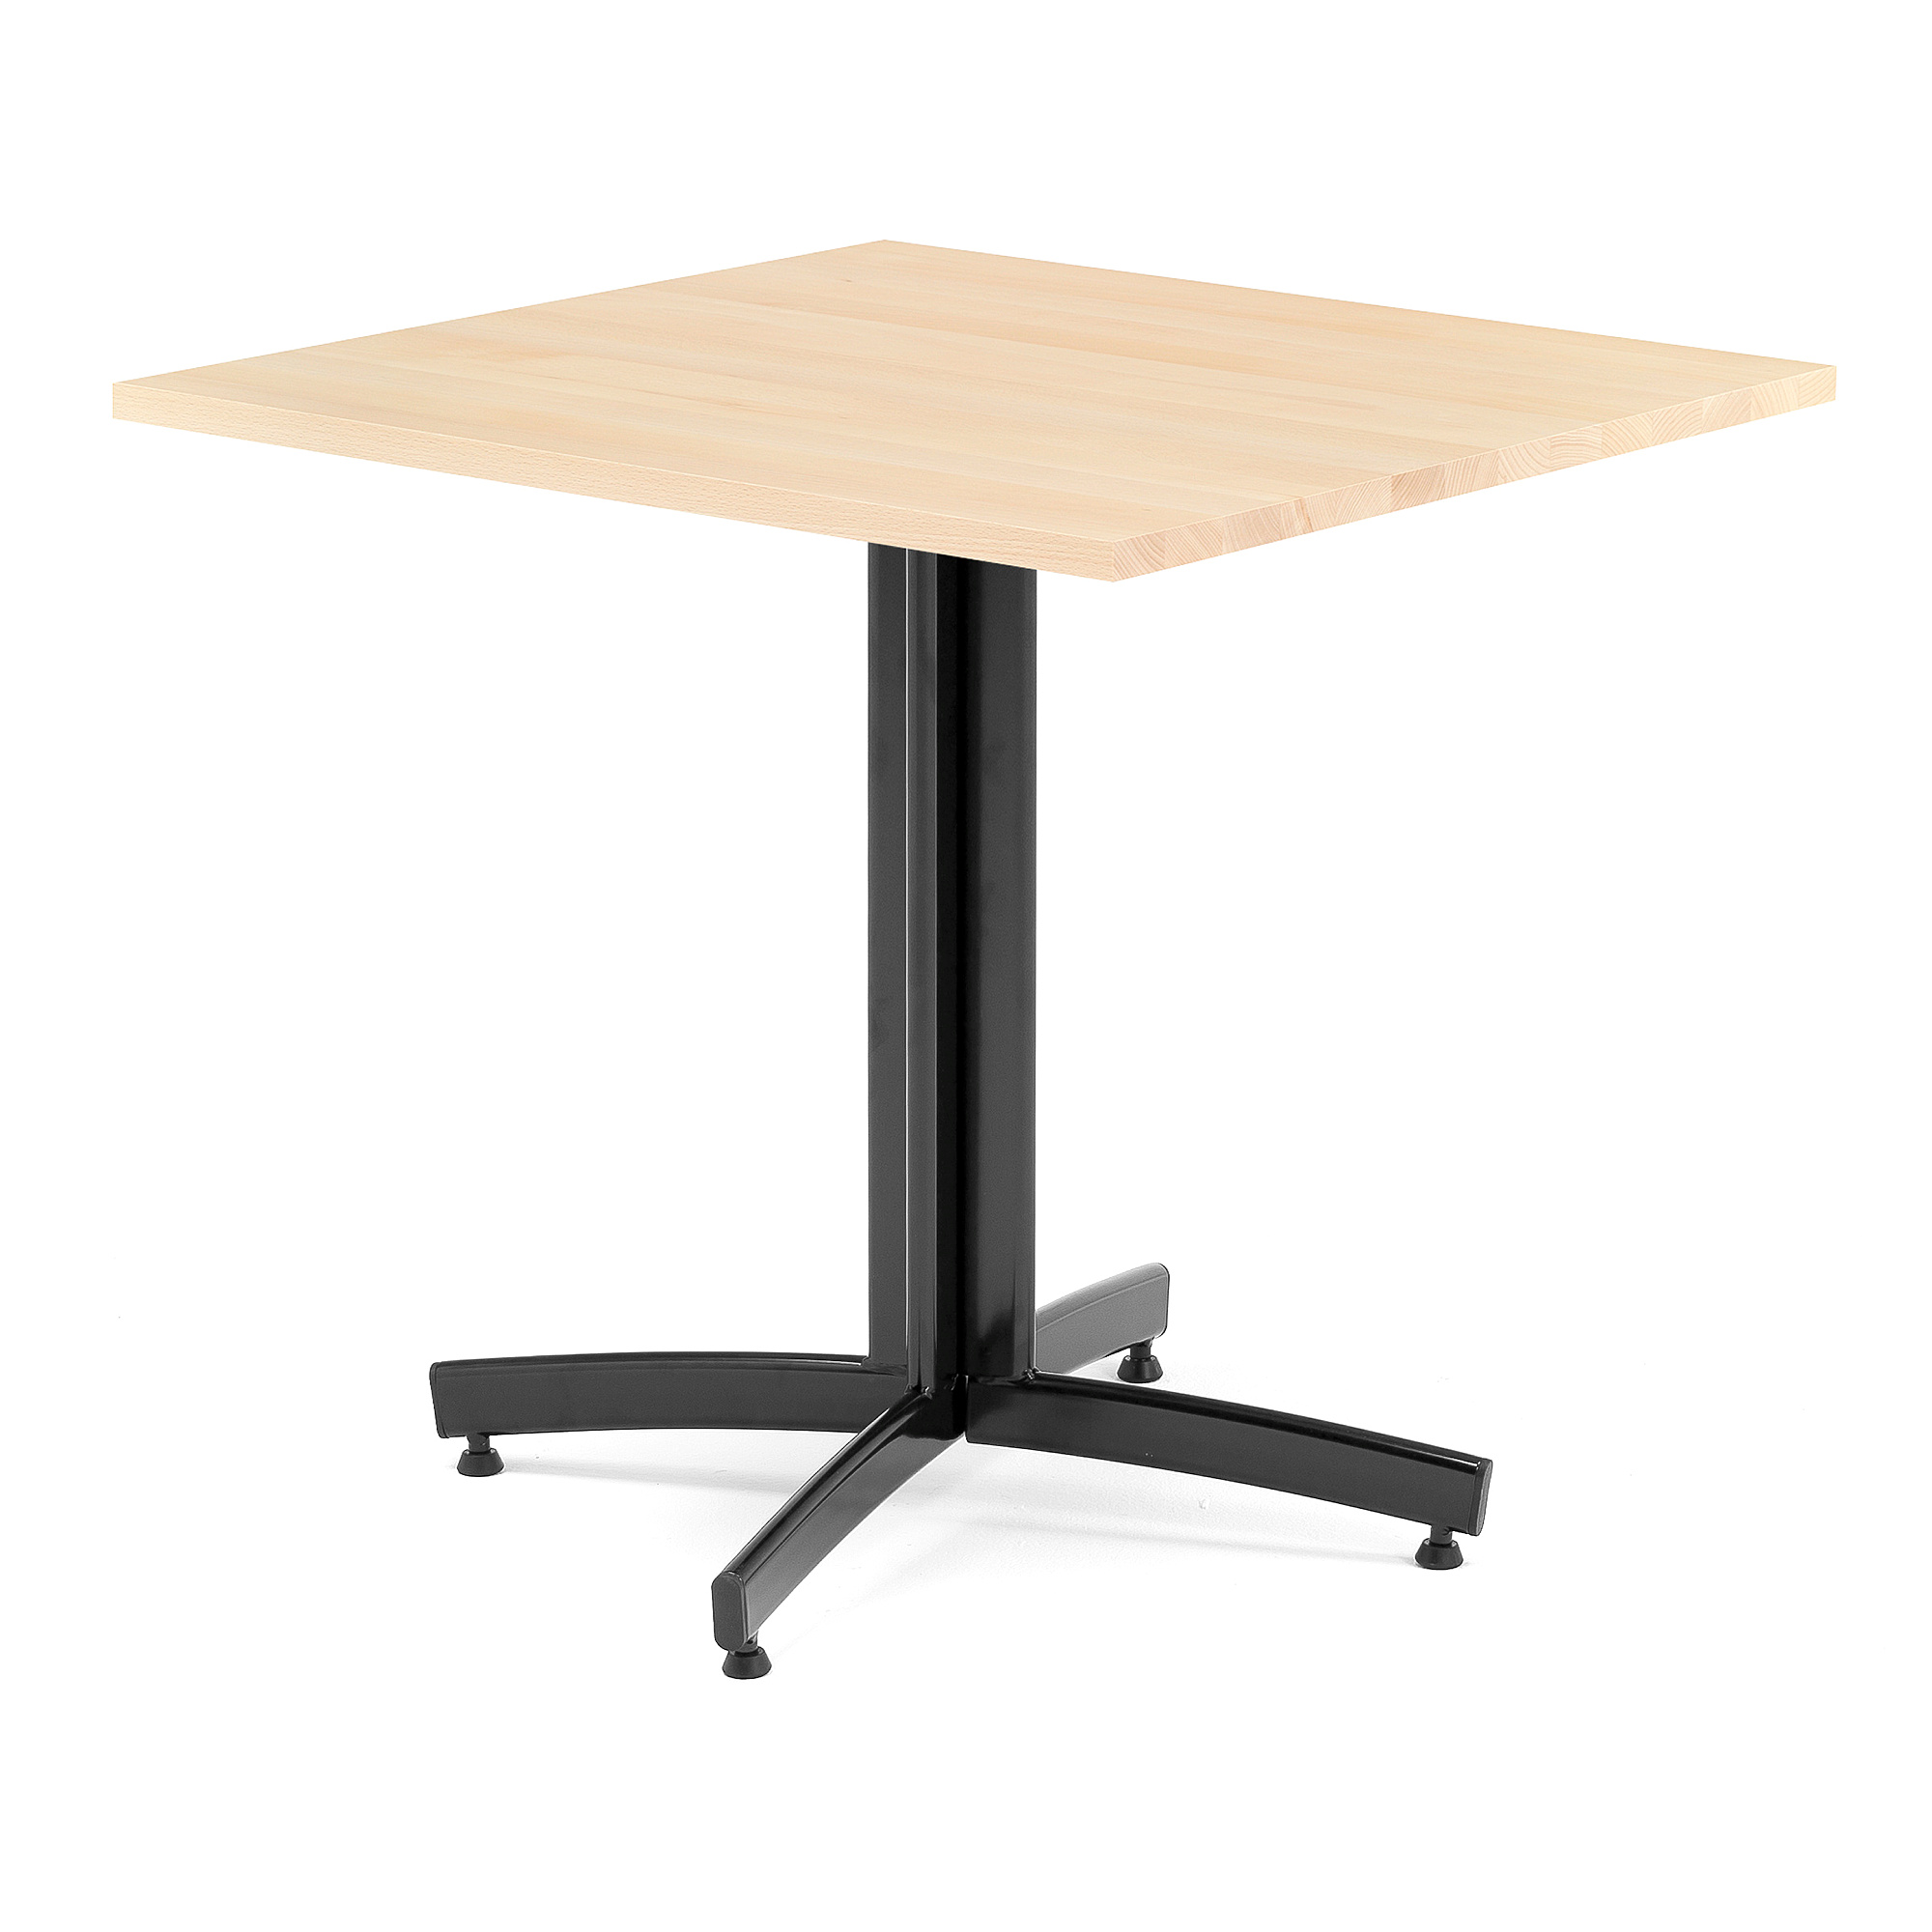 Kavárenský stolek SANNA, 700x700 mm, masiv buk/černá